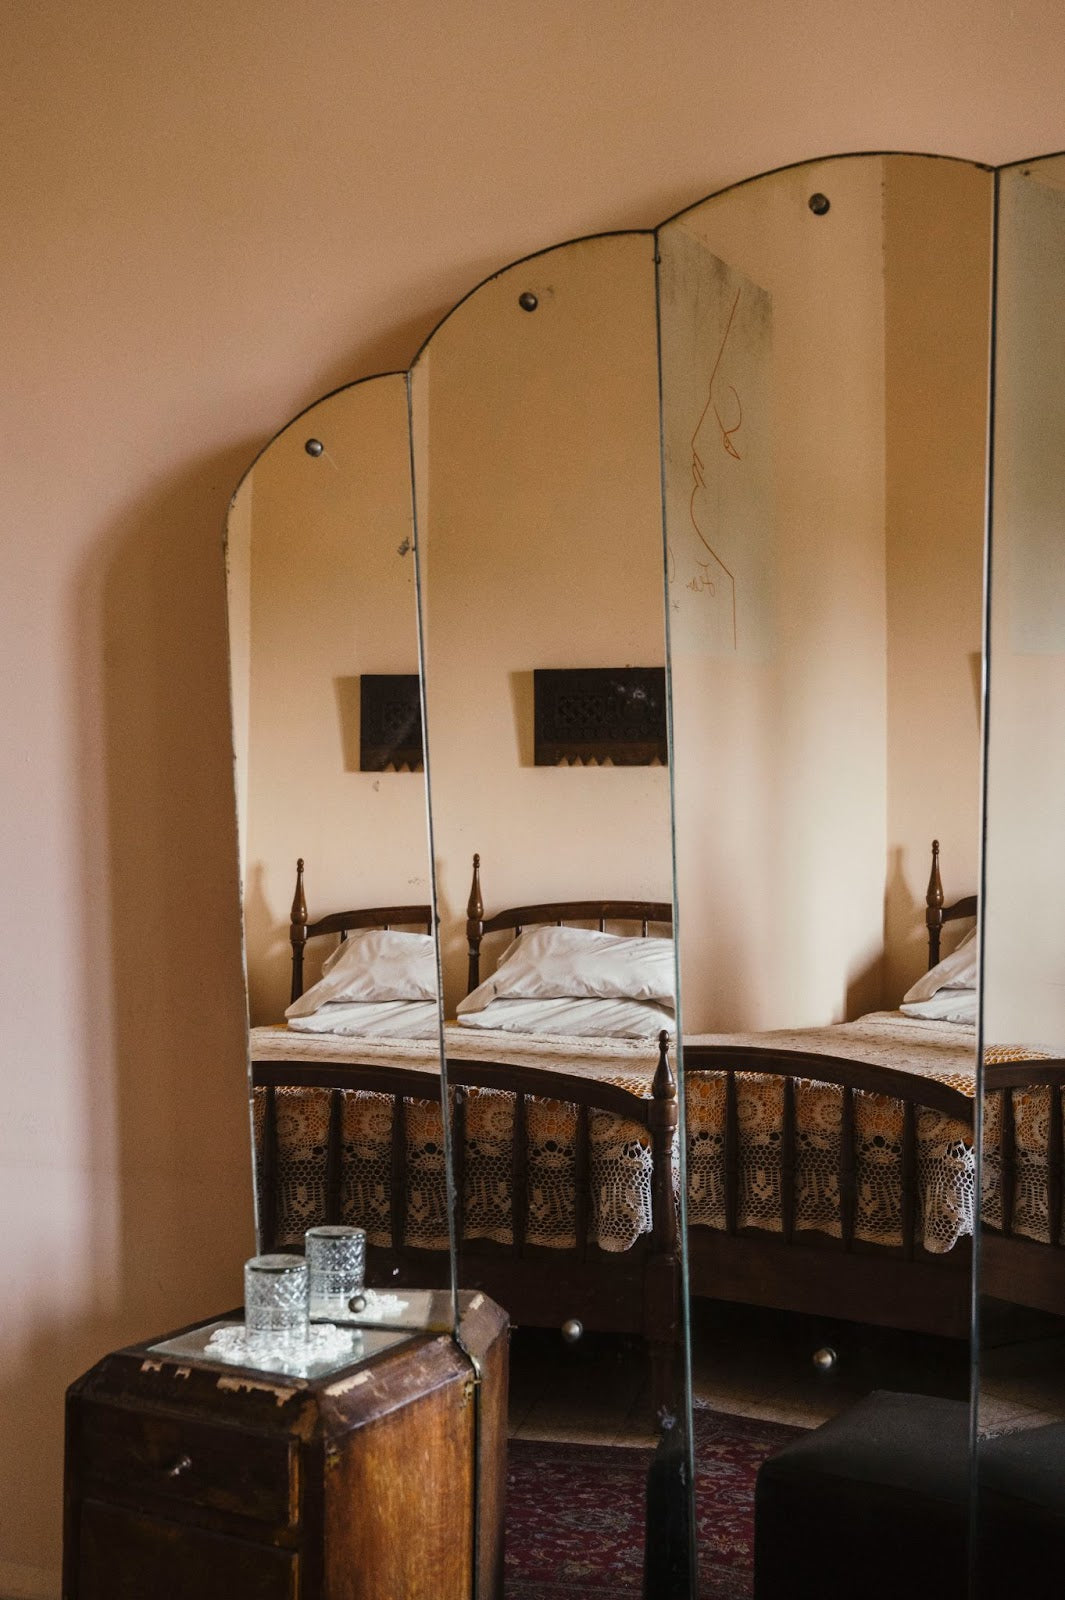 Mirror detail, Jean Cocteau’s room.